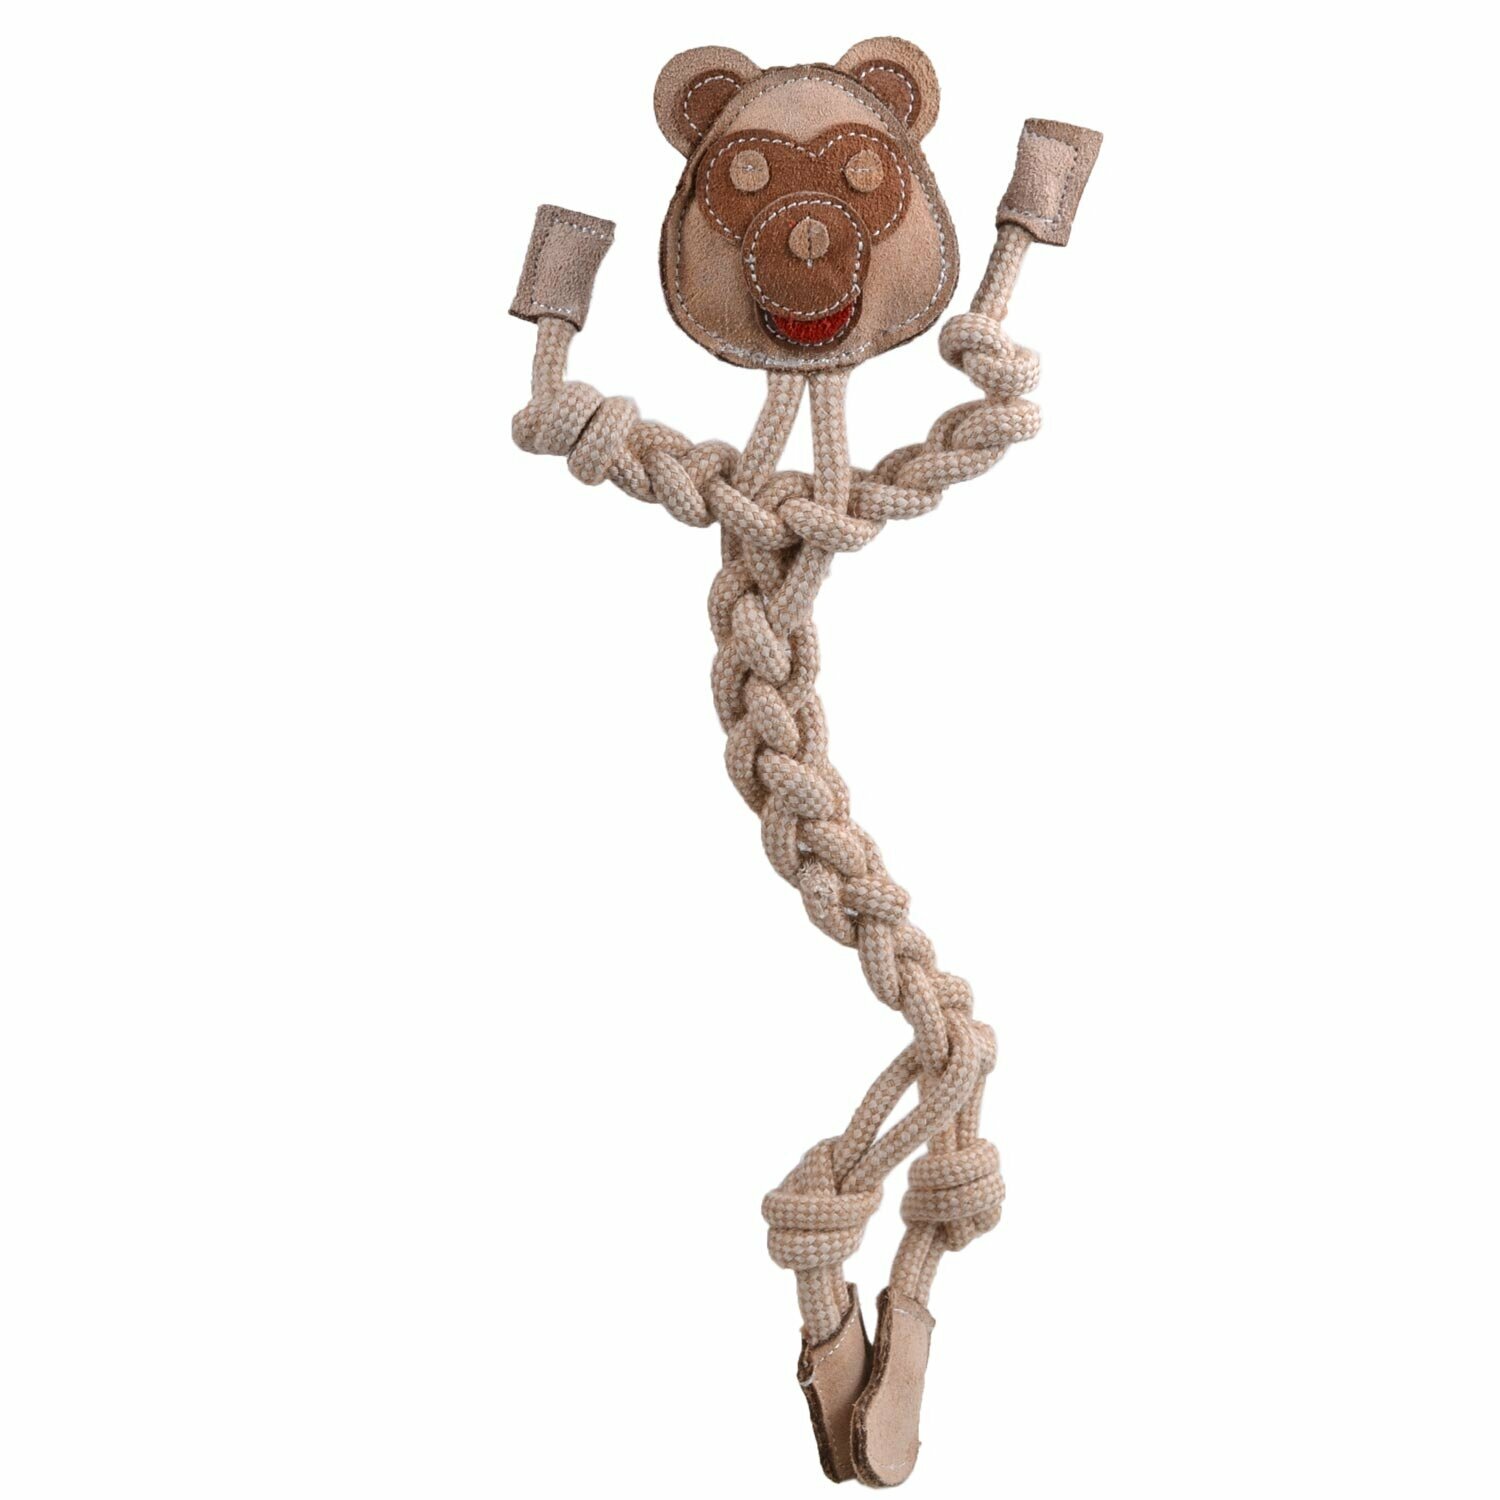 Igrača za pse iz naravnih materialov "Opica" - izdelano iz jute, bombaža in usnja